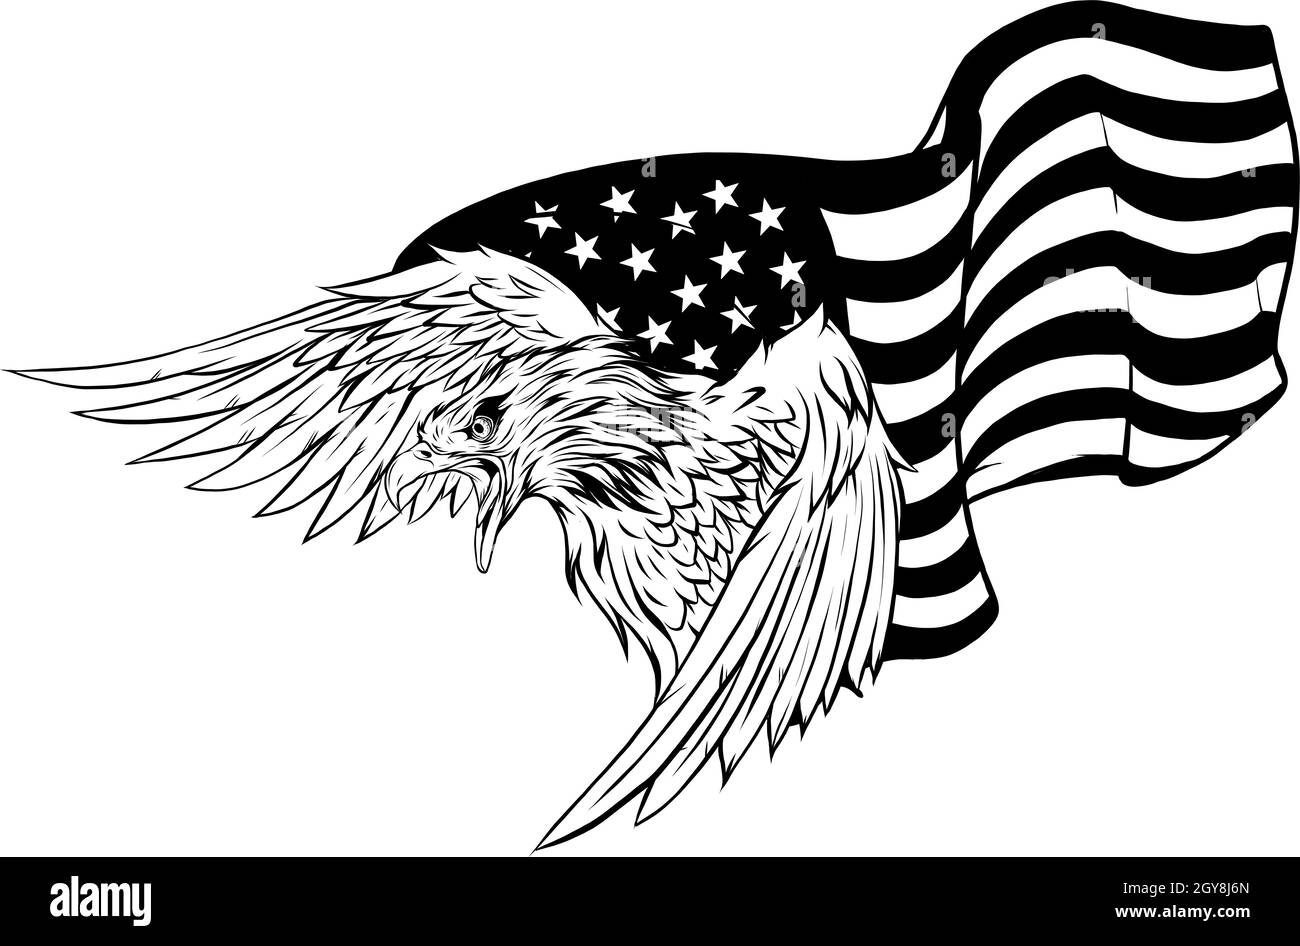 Erhabung amerikanischer Adler gegen US-Flagge und weißen Hintergrund. Stockfoto